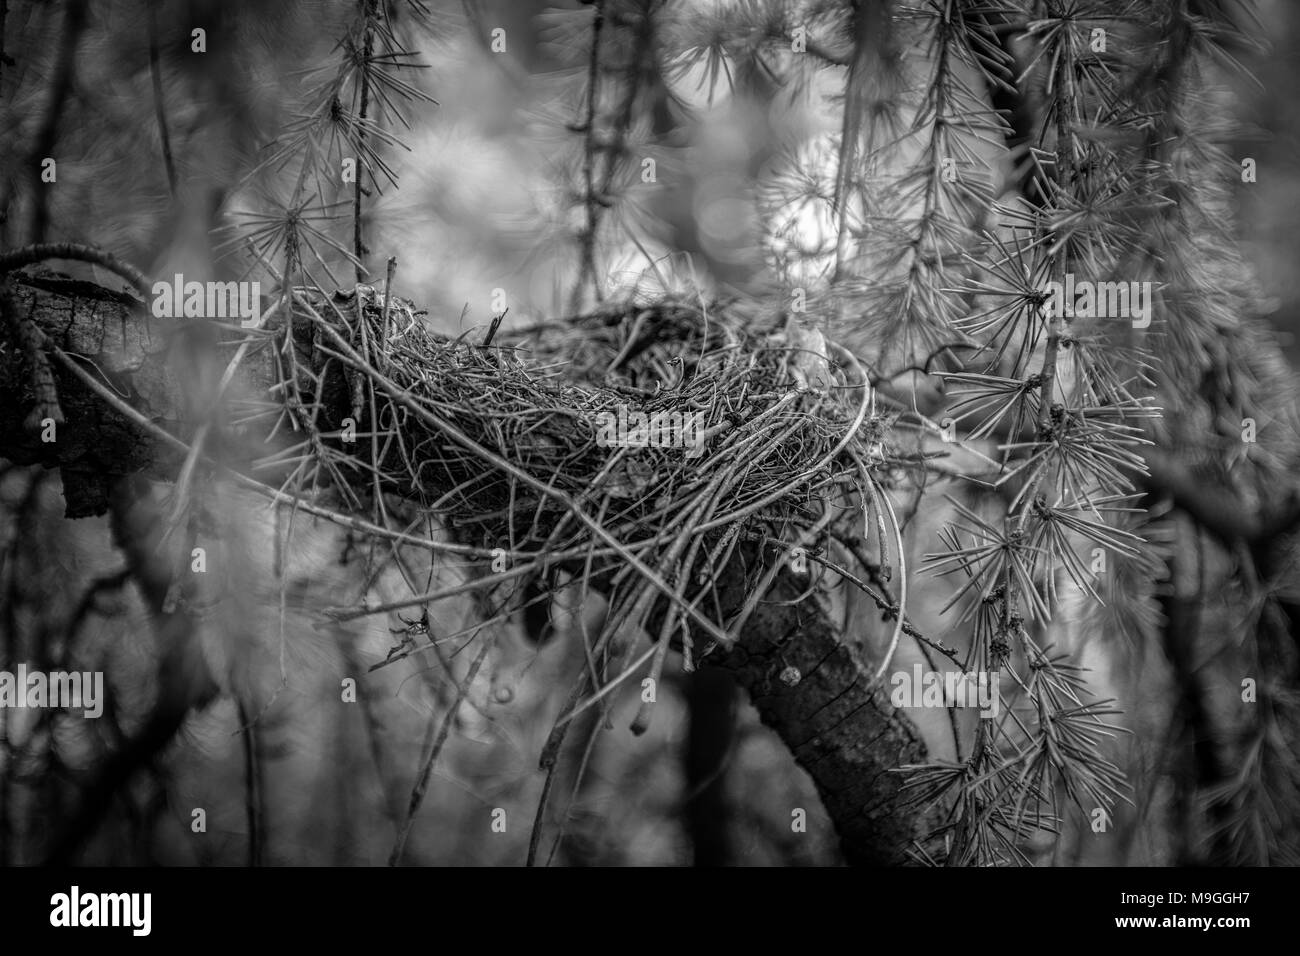 Eine neblige, Moody s/w in der Nähe von einem leeren Robin's Nest versteckt in einem immergrünen kurzen Ast- und Blattwerk, Blätter mit Soft-entfernten Hintergrund Licht konzentrieren. Stockfoto